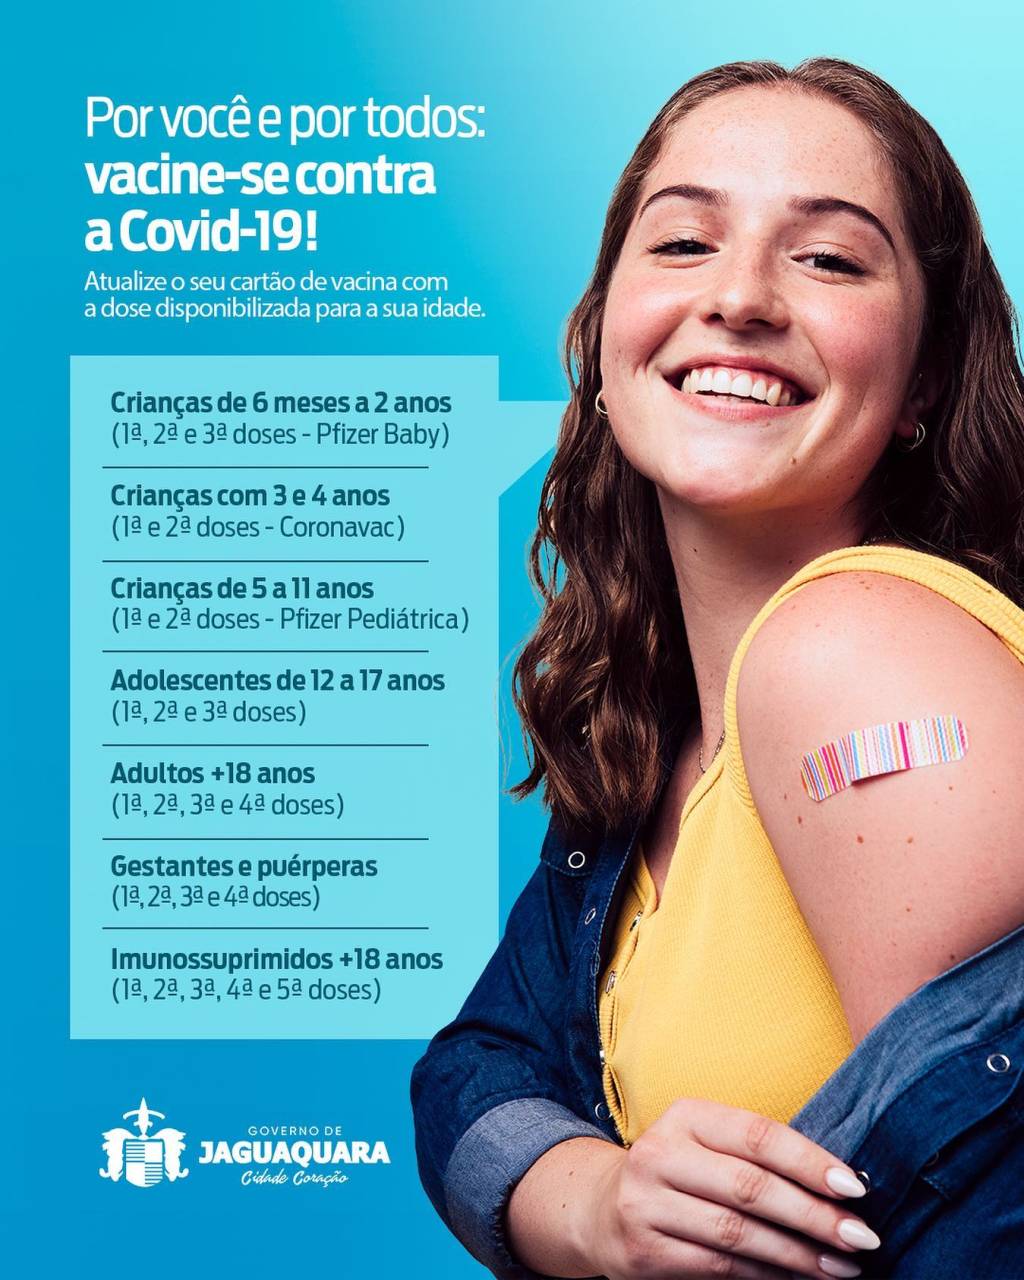 Campanha de Vacinação